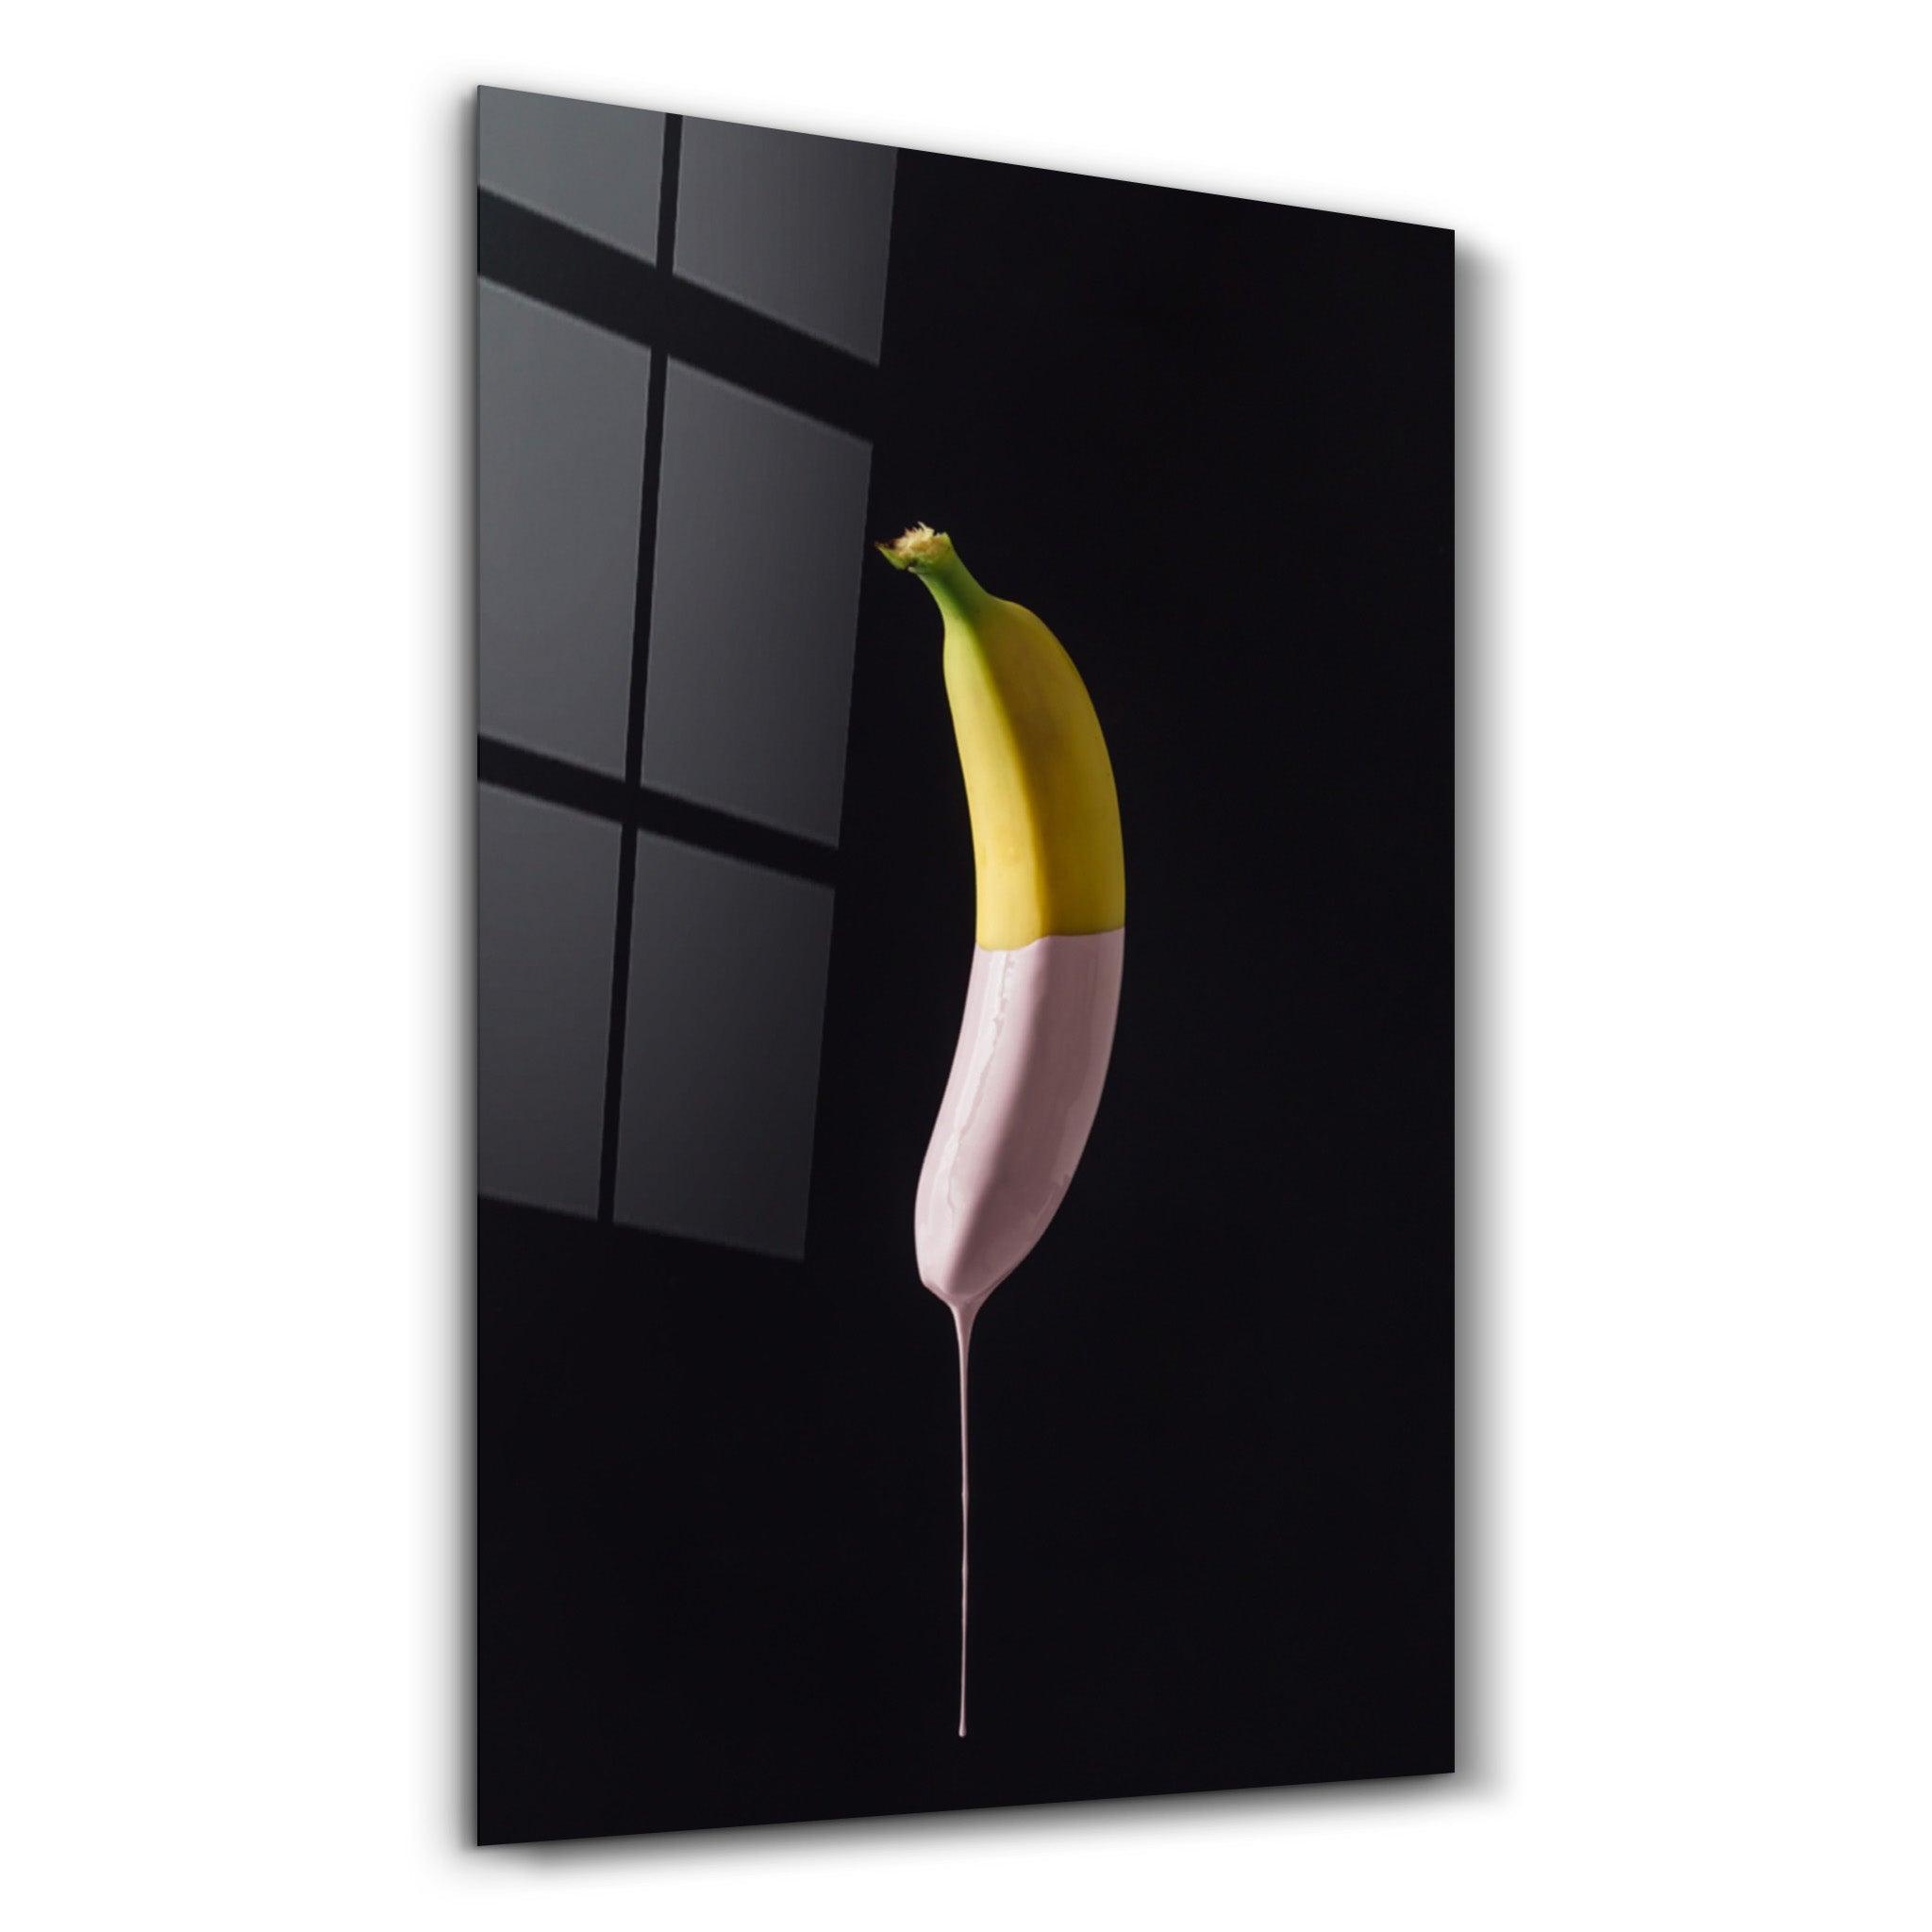 ・"Abstract Banana"・Glass Wall Art - ArtDesigna Glass Printing Wall Art